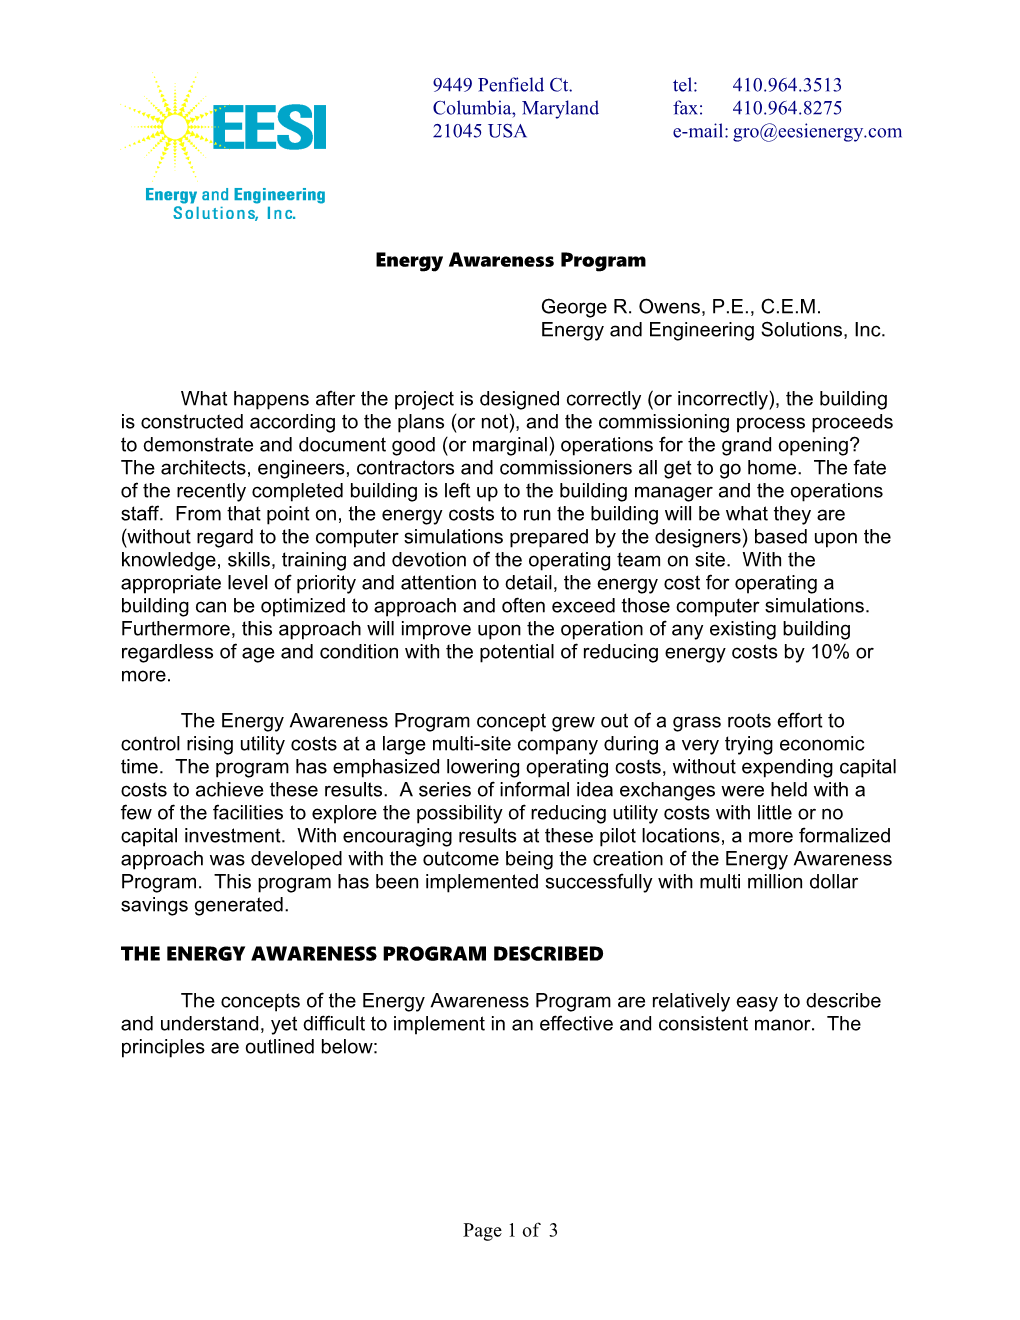 Energy Awareness Program